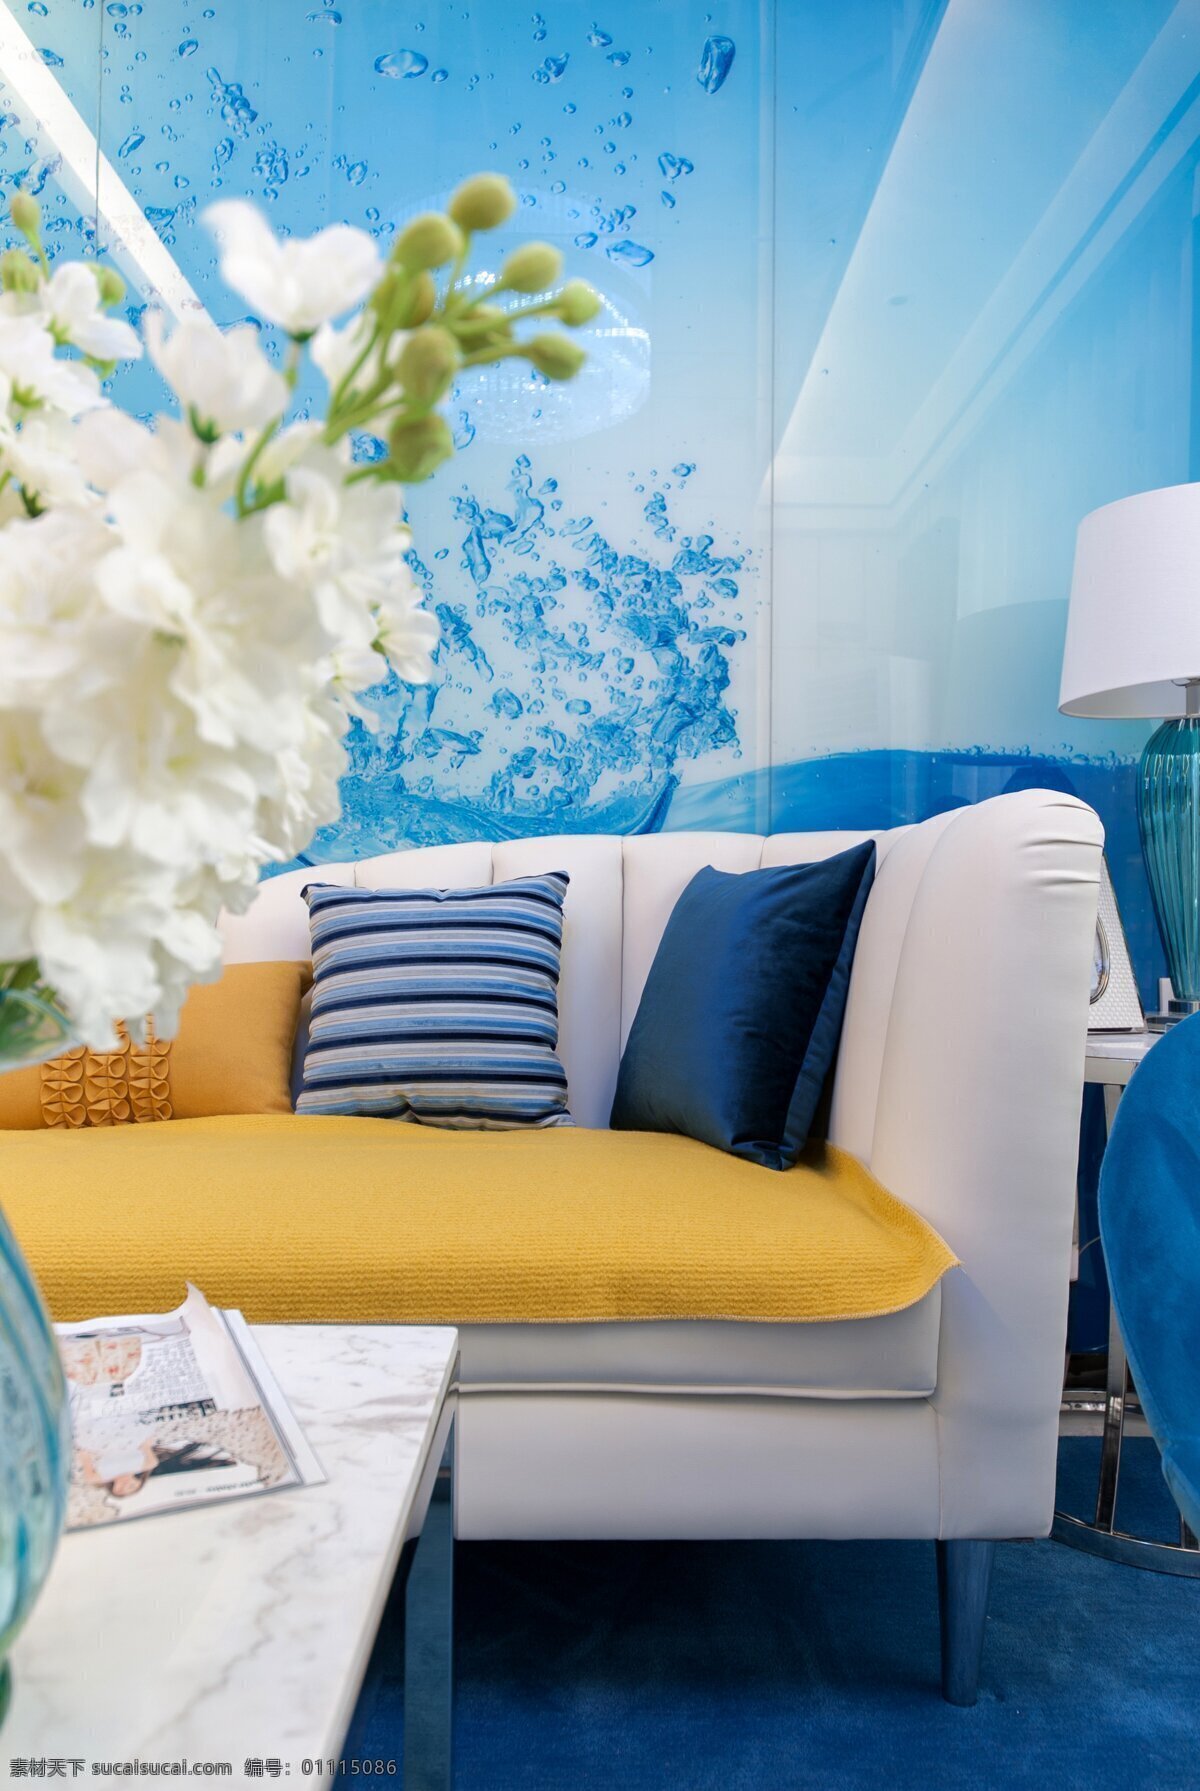 现代 简约 蓝色 客厅 沙发 抱枕 家装 效果图 室内设计 时尚 装修实景图 华丽 装修设计 家居 典雅 家居设计图